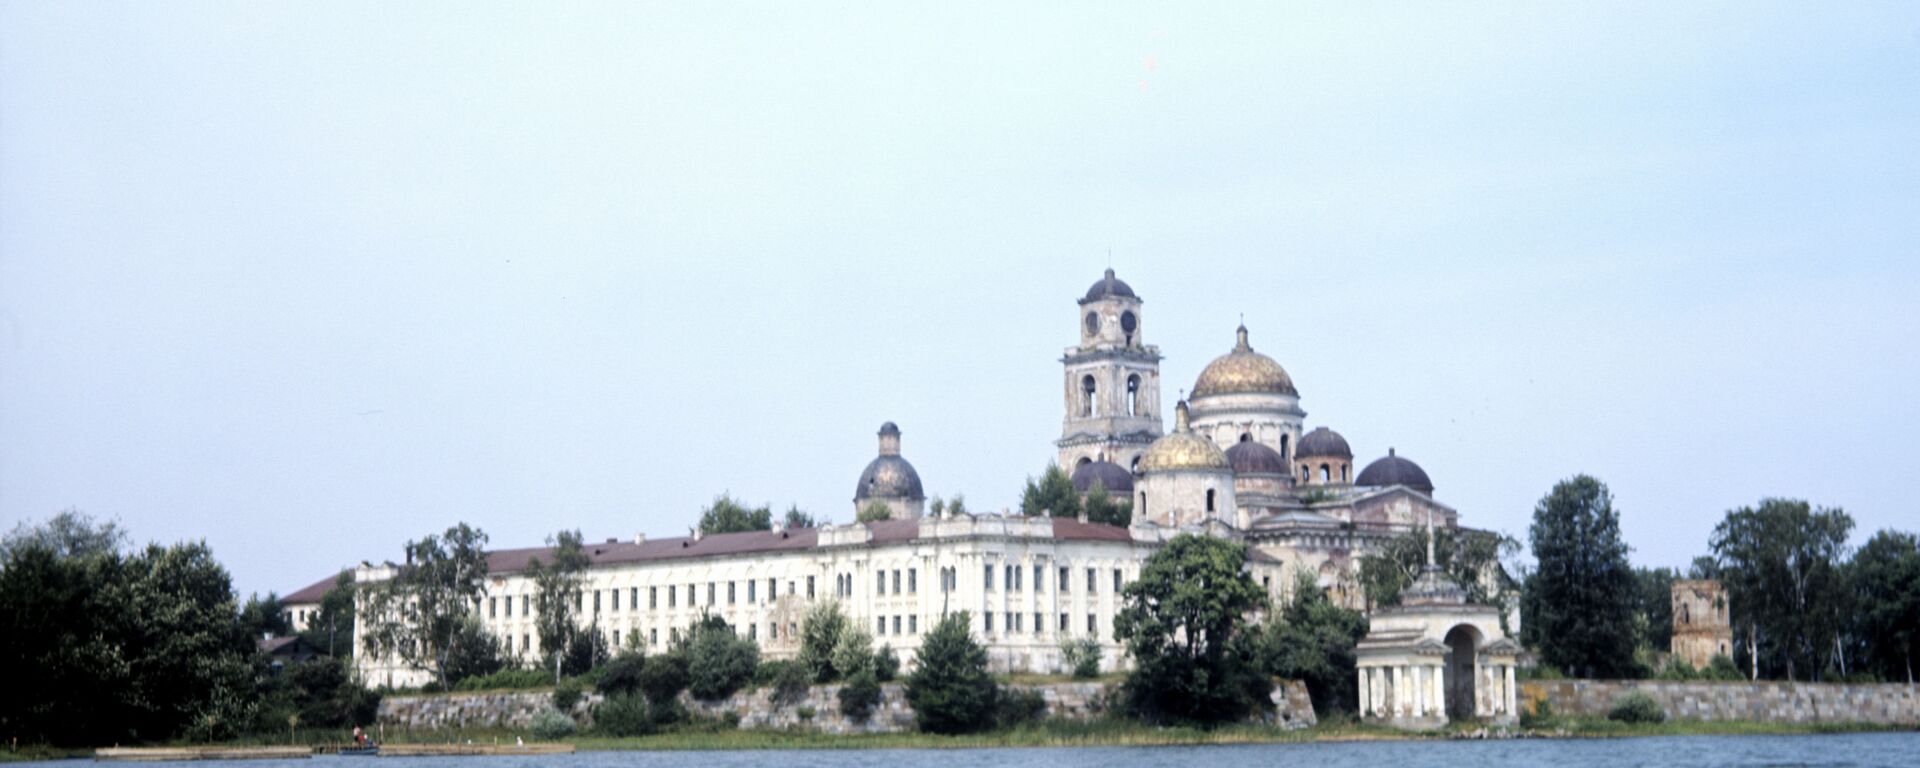 Манастир Нилова пустиња на језеру Селигер - Sputnik Србија, 1920, 26.08.2021